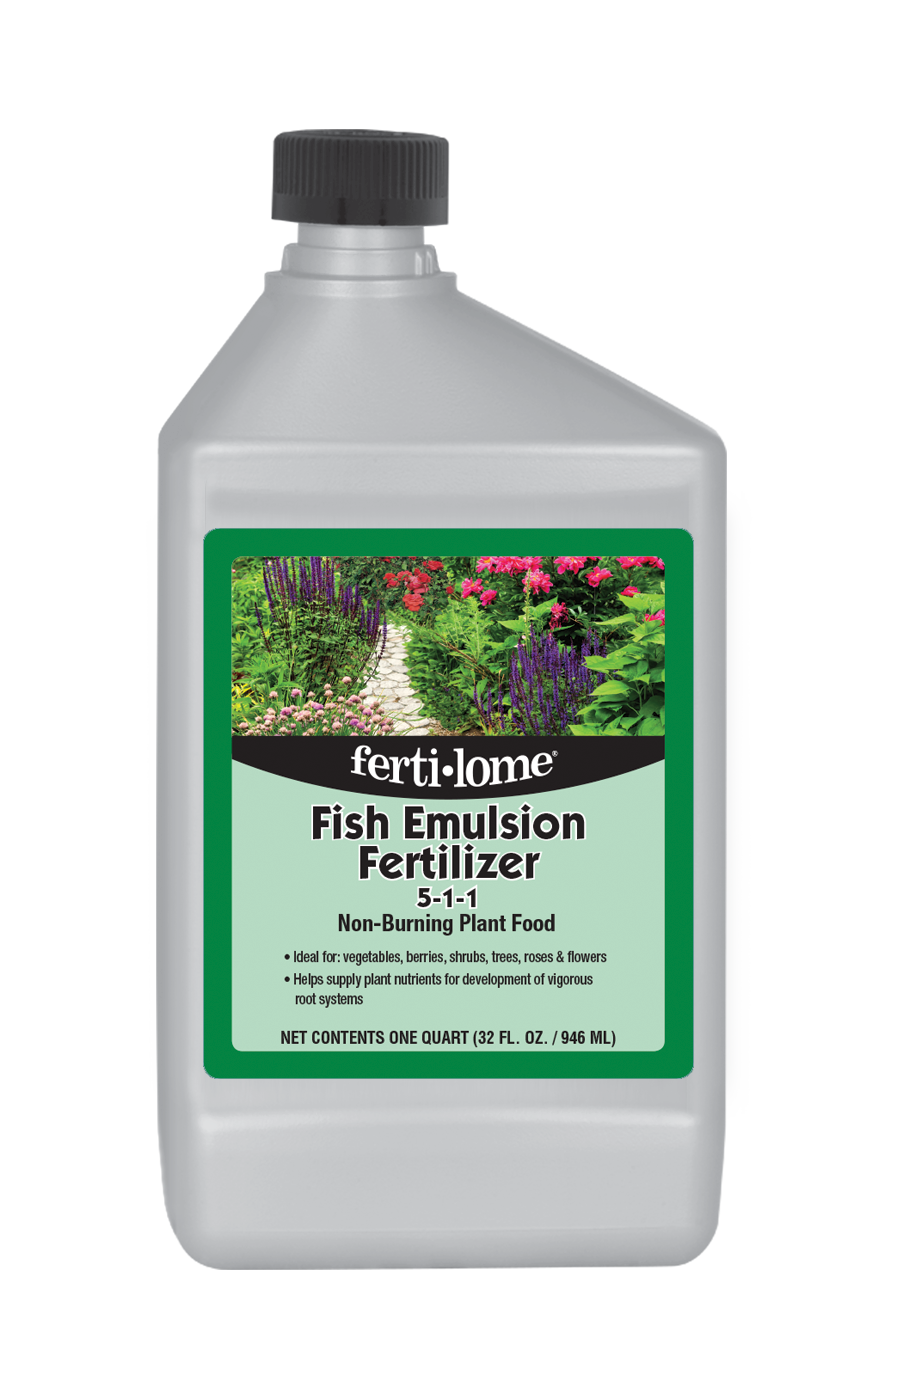 Fertilome Fish Emulsion Fertilizer Qt